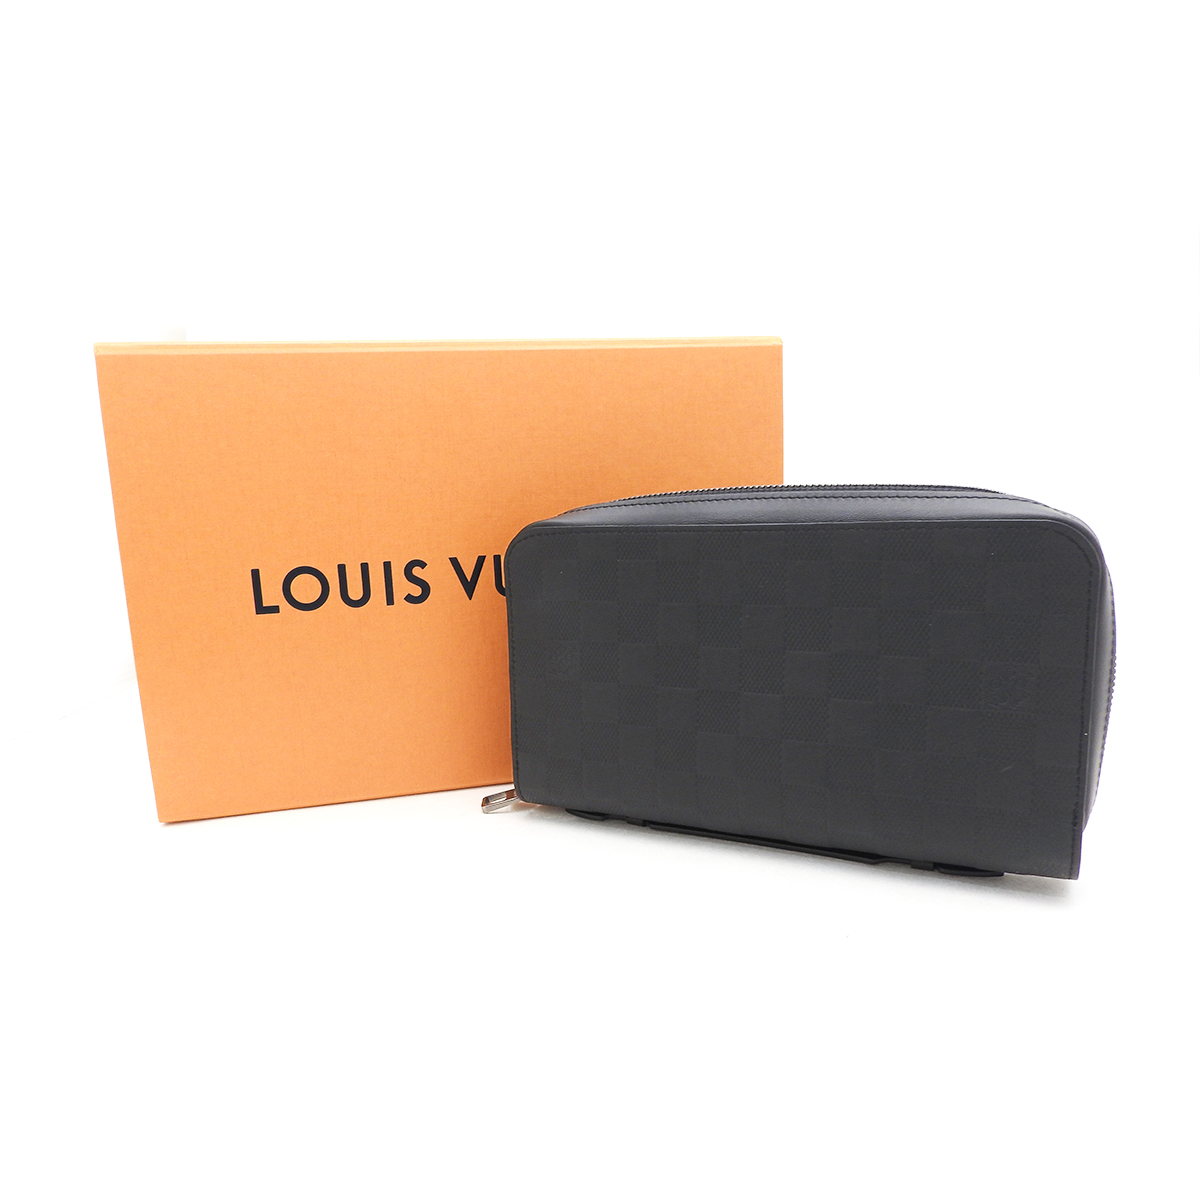 【セール価格】ルイヴィトン(Louis Vuitton) ジッピーXL N61254 ダミエアンフィニ Sランク ブラック